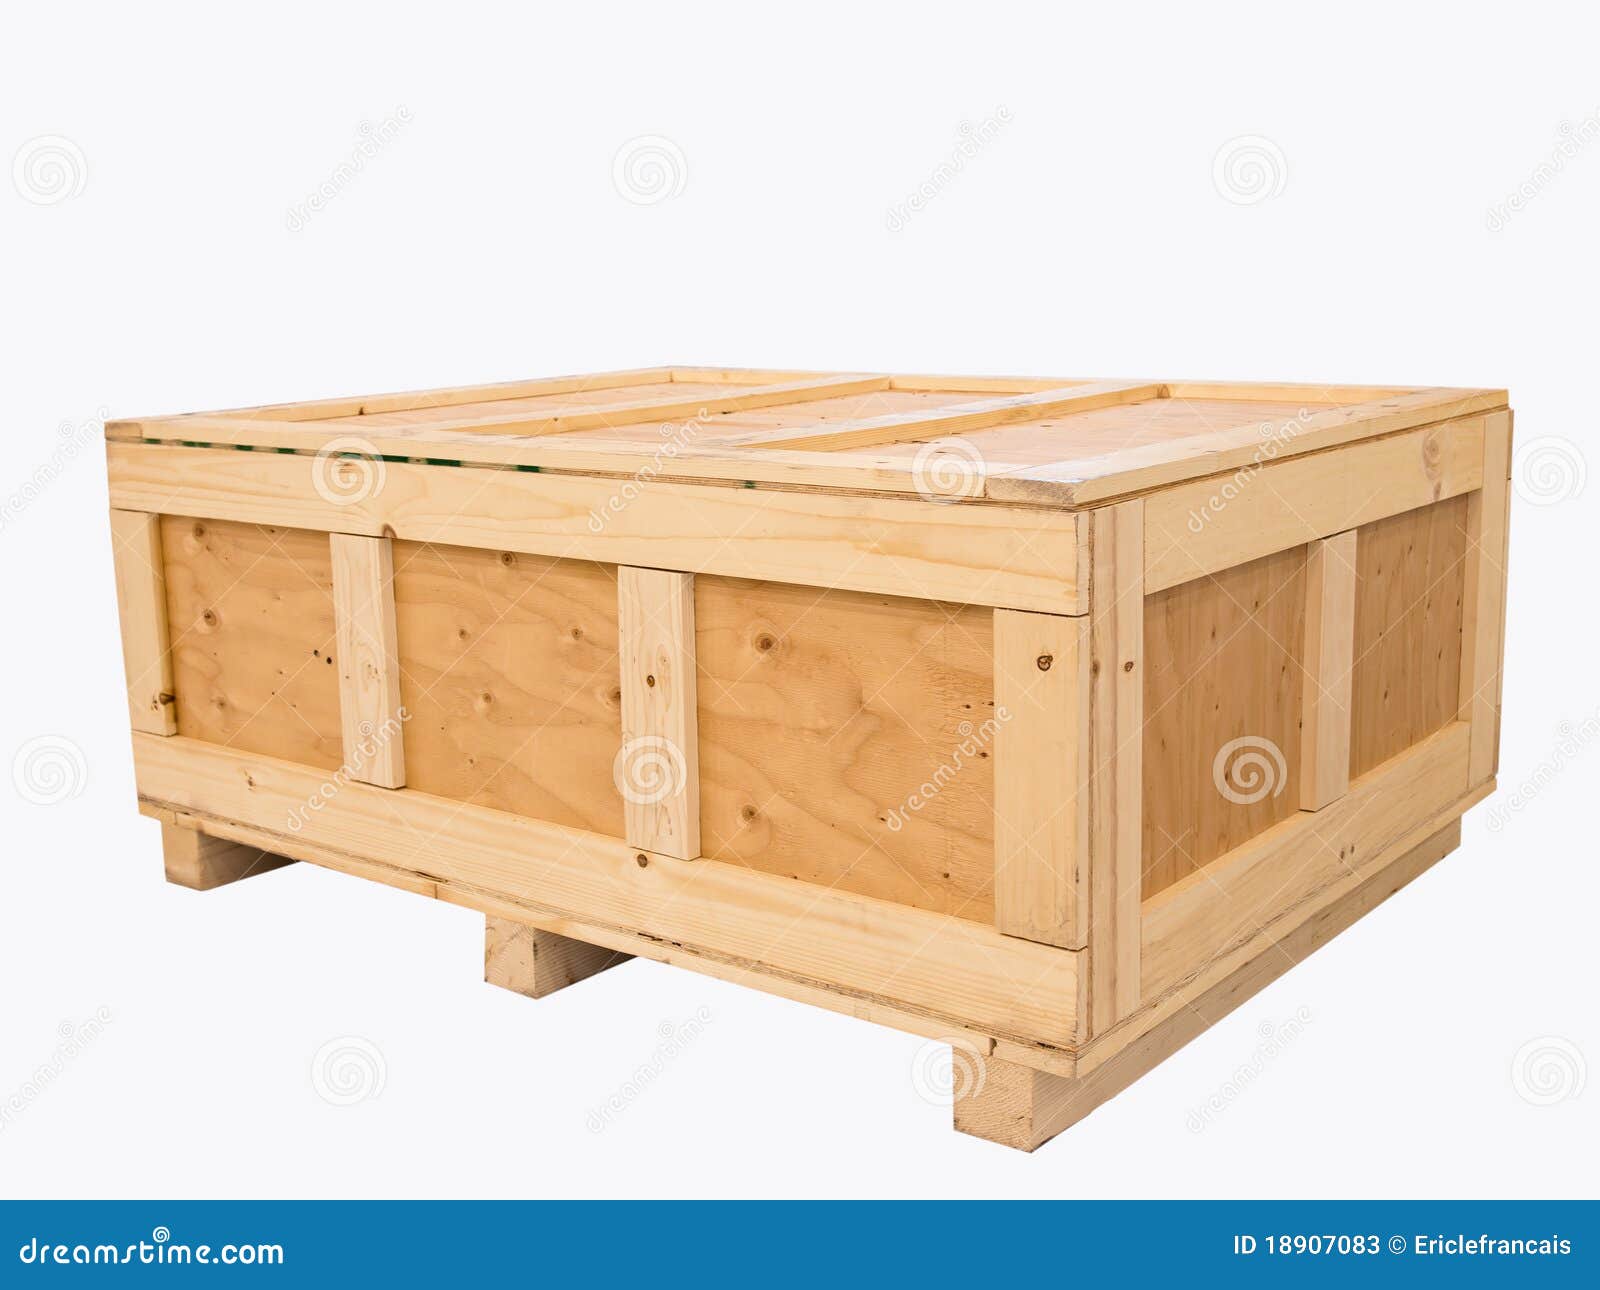 big cargo wooden crate